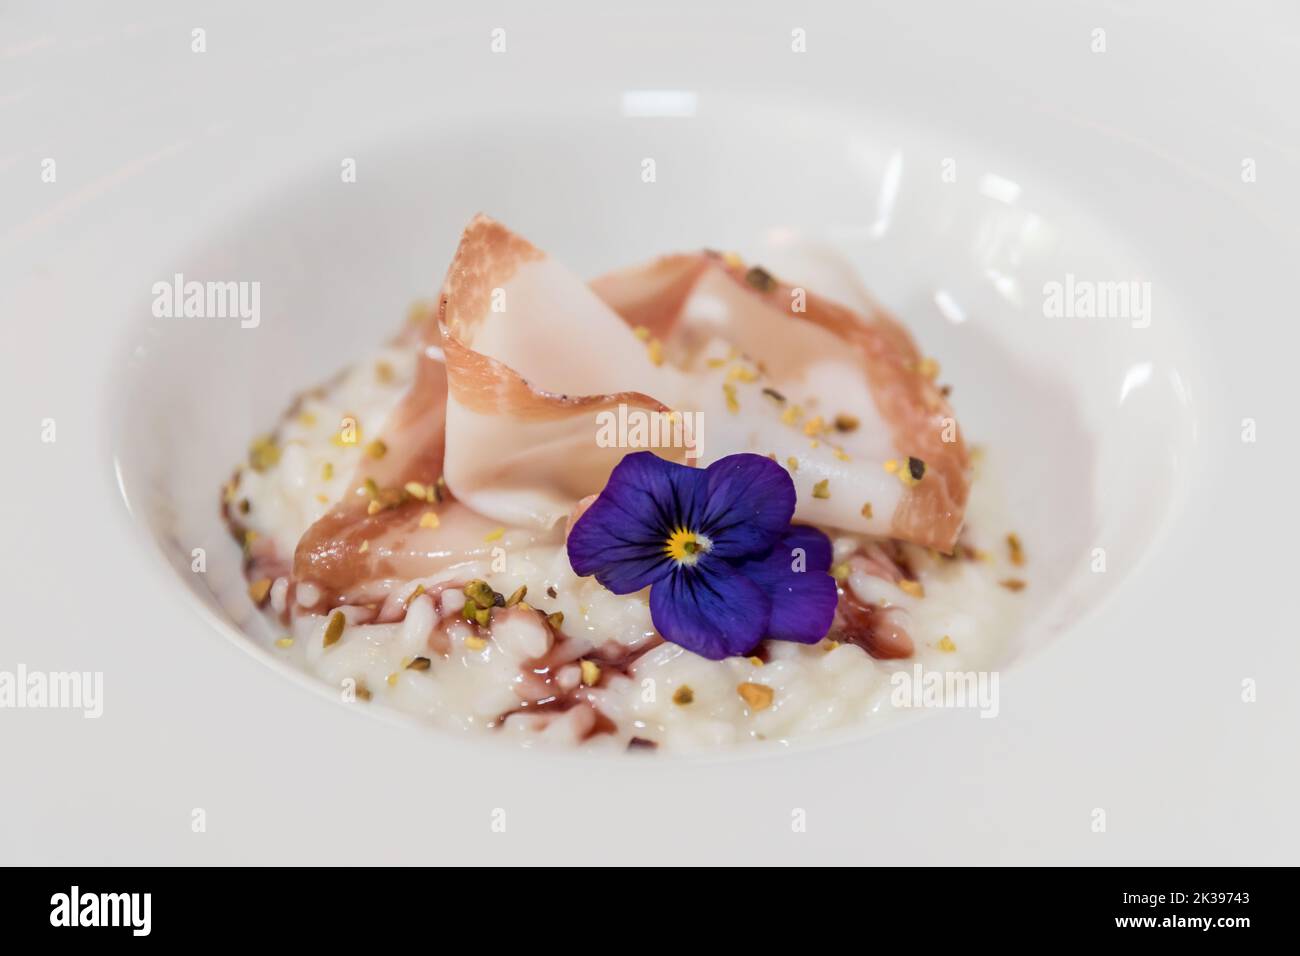 Risotto à la pistache et au bacon sur une assiette blanche, décoré de fleurs violettes. Banque D'Images